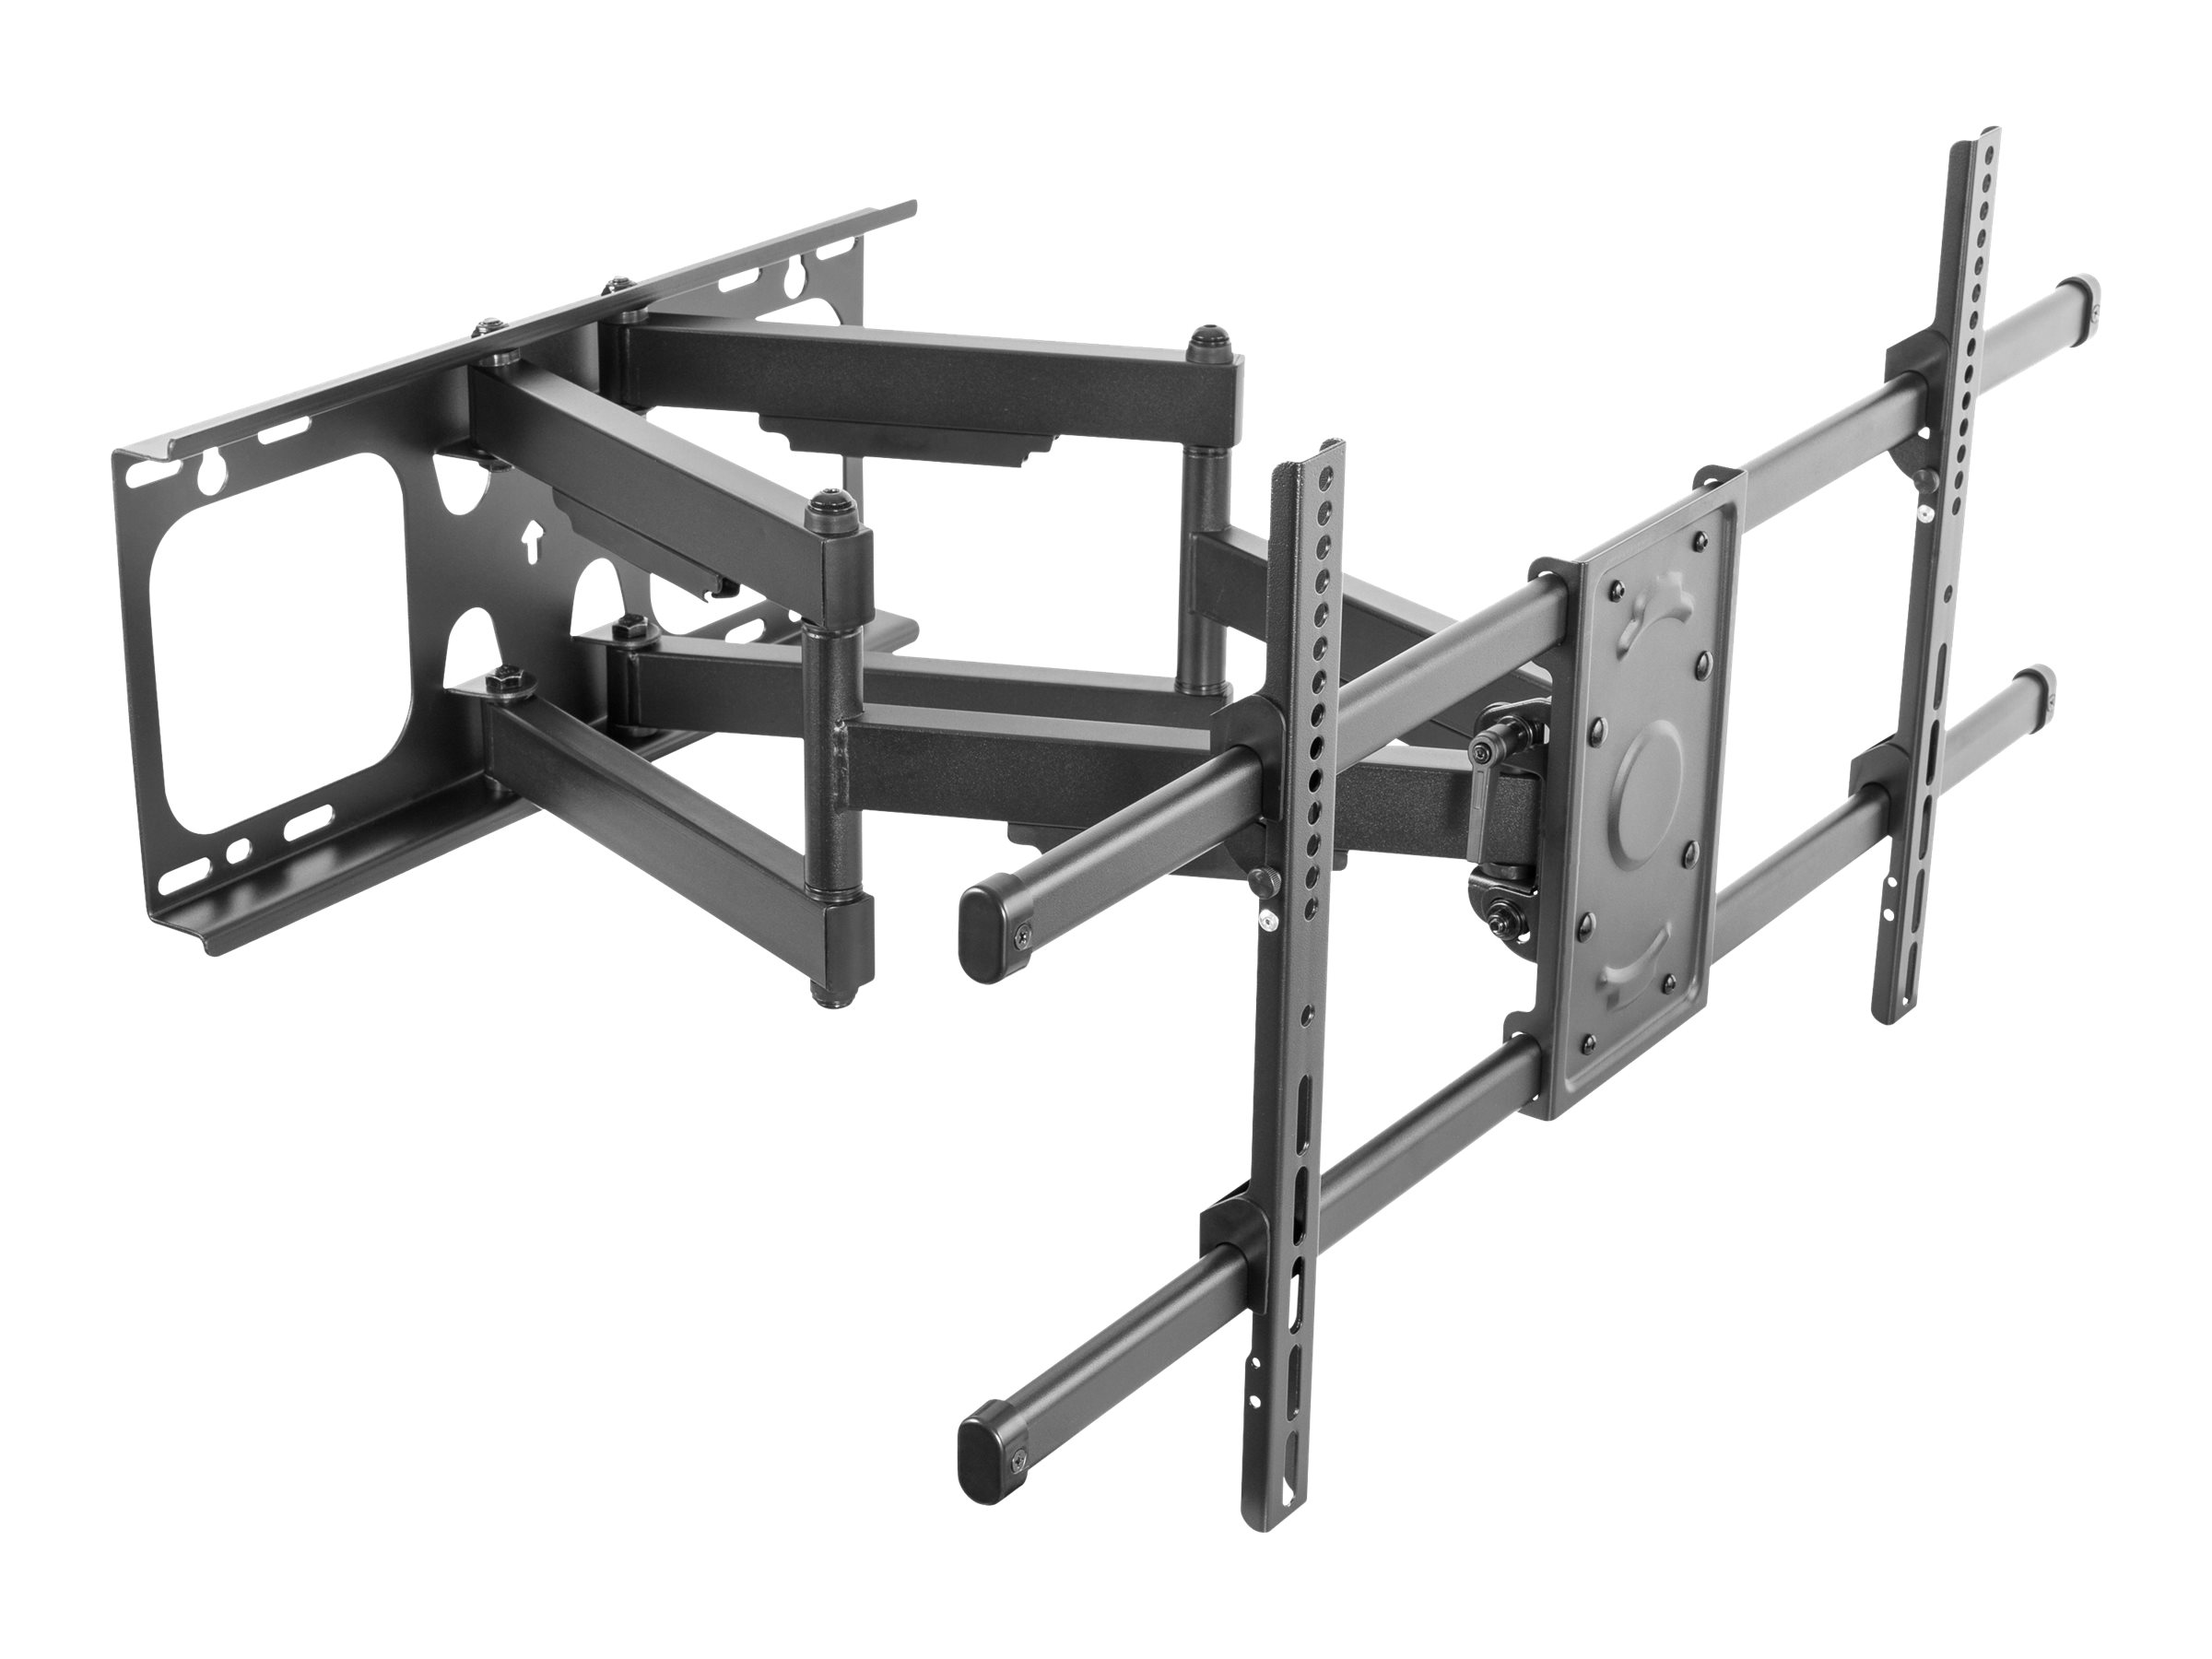 equip Klammer für Flachbildschirm (neig- und schwenkbar) - Stahl - Schwarz - Bildschirmgröße: 94-229 cm (37"-90")